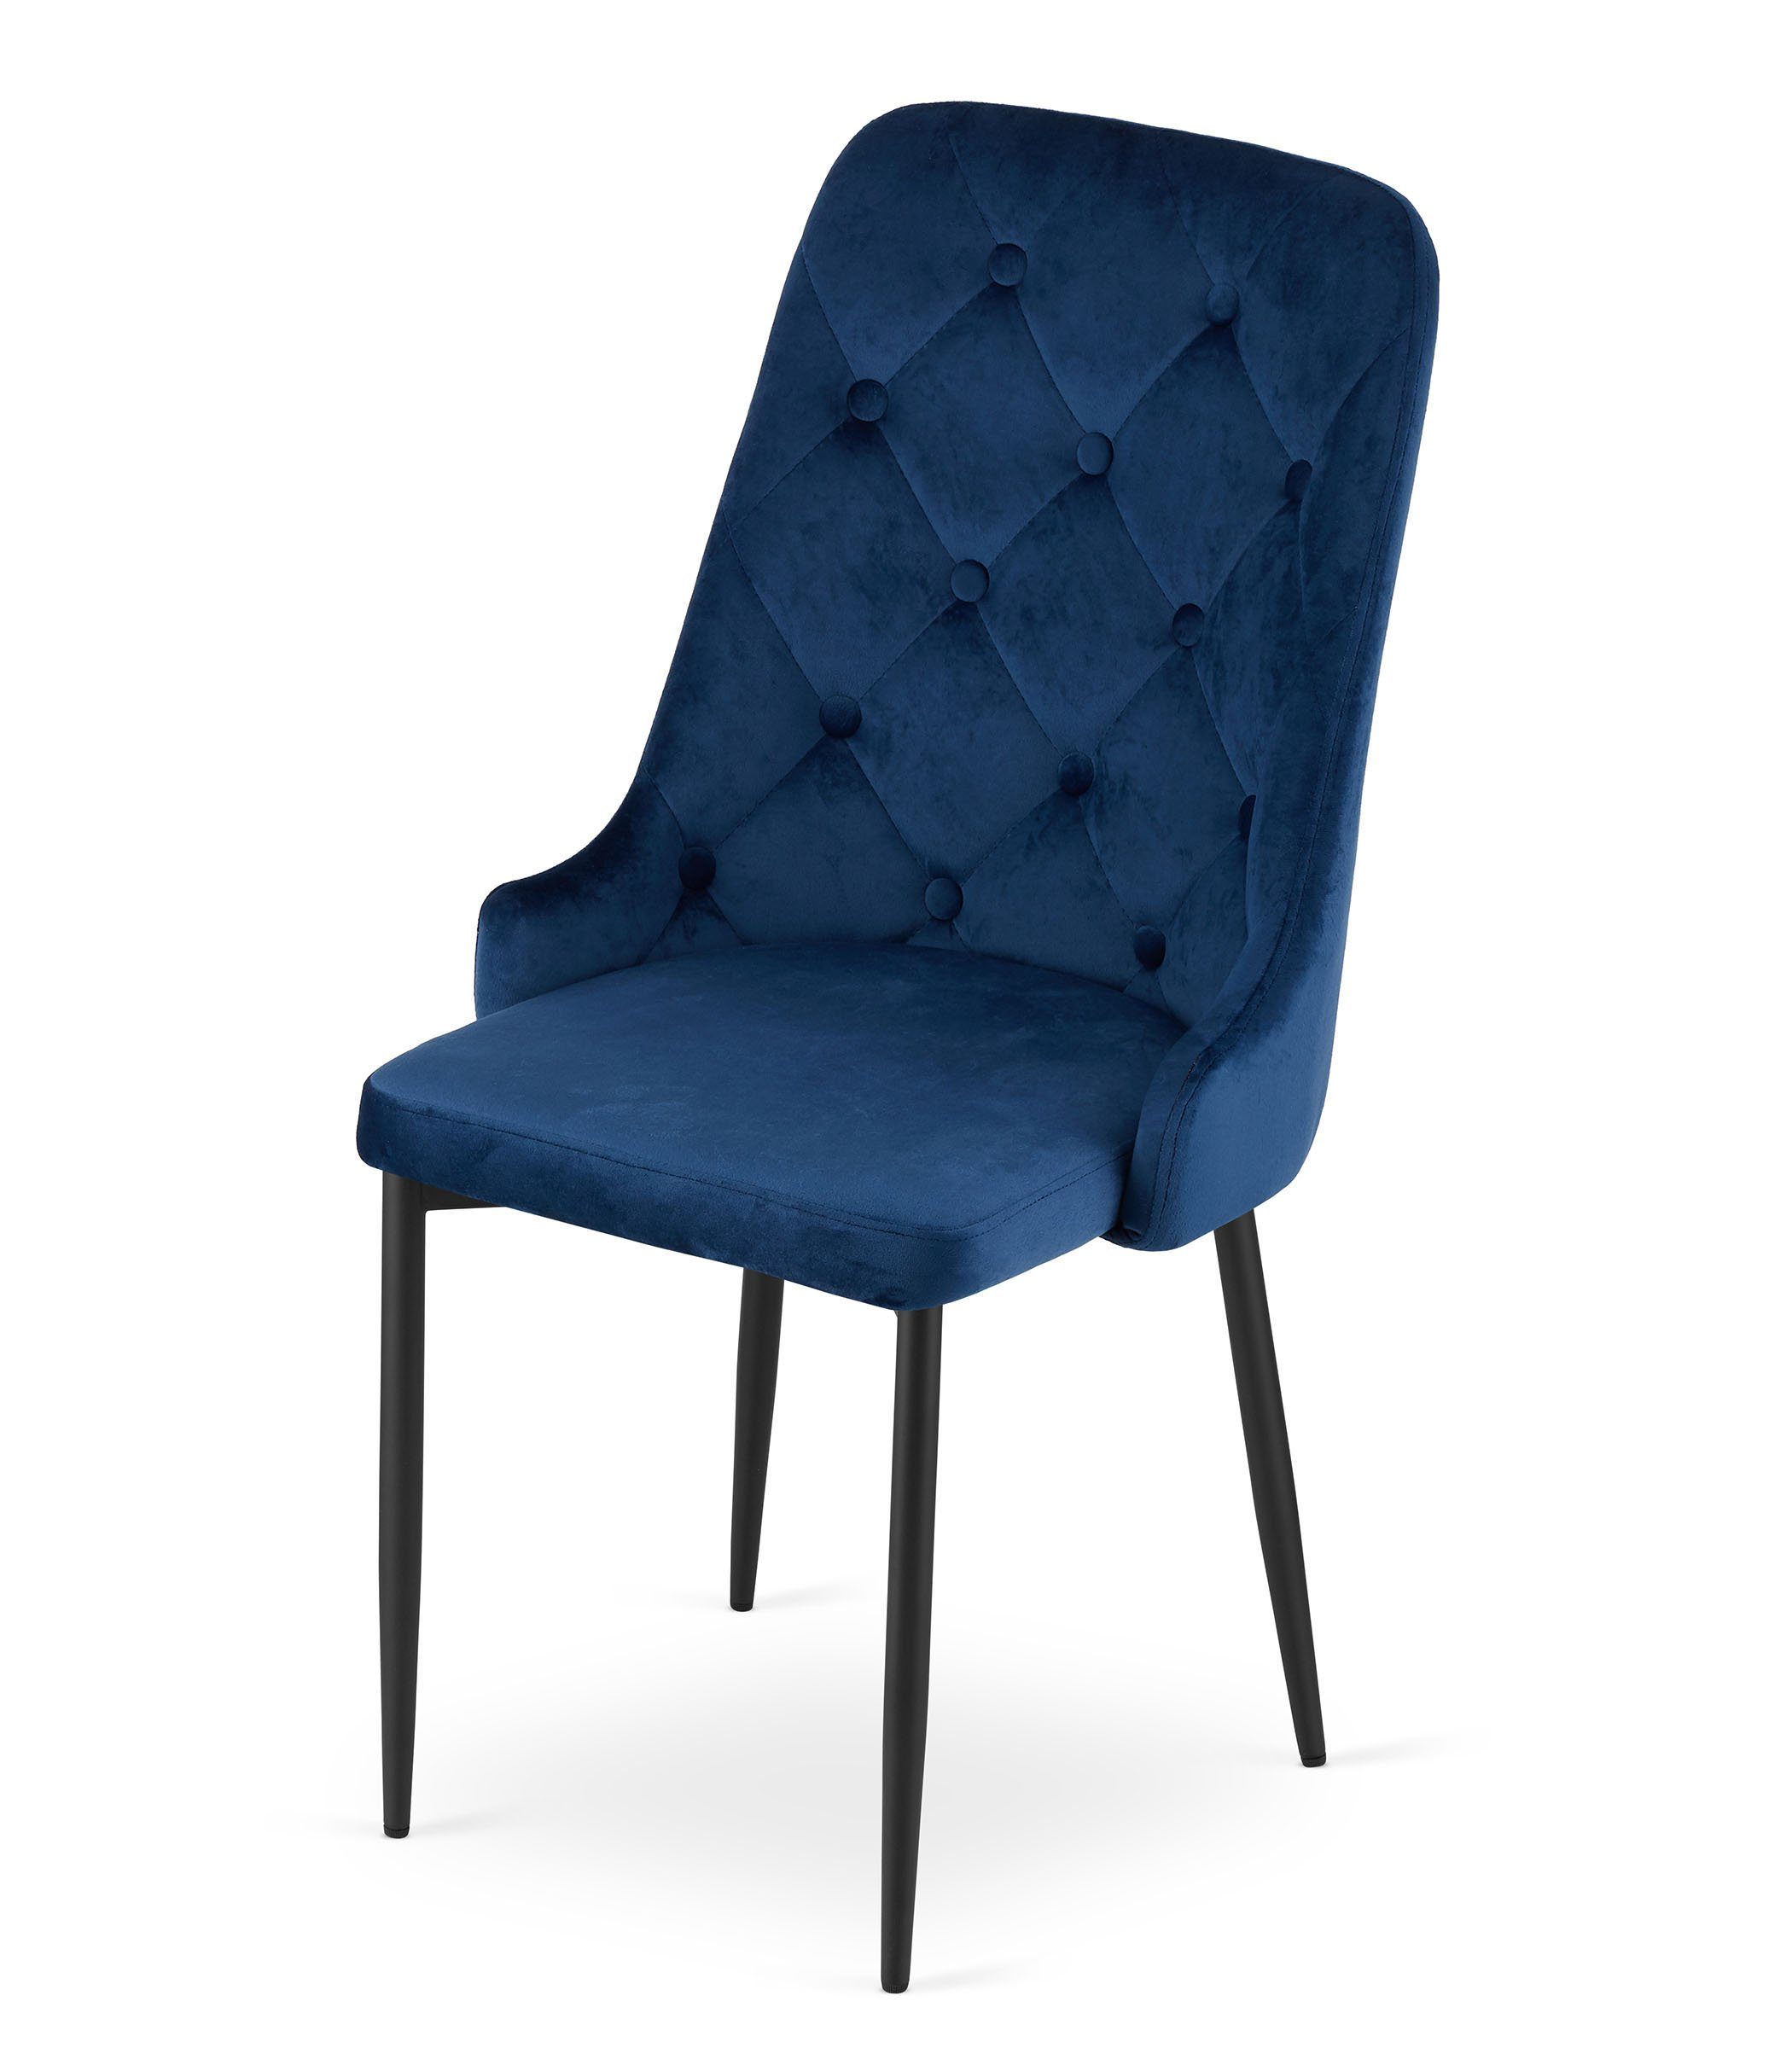 mit Collective 4x Home 4er Wohnzimmerstuhl Stuhl Set schwarzen Polster, blau Esszimmerstuhl Polsterstuhl Esszimmerstuhl Beinen